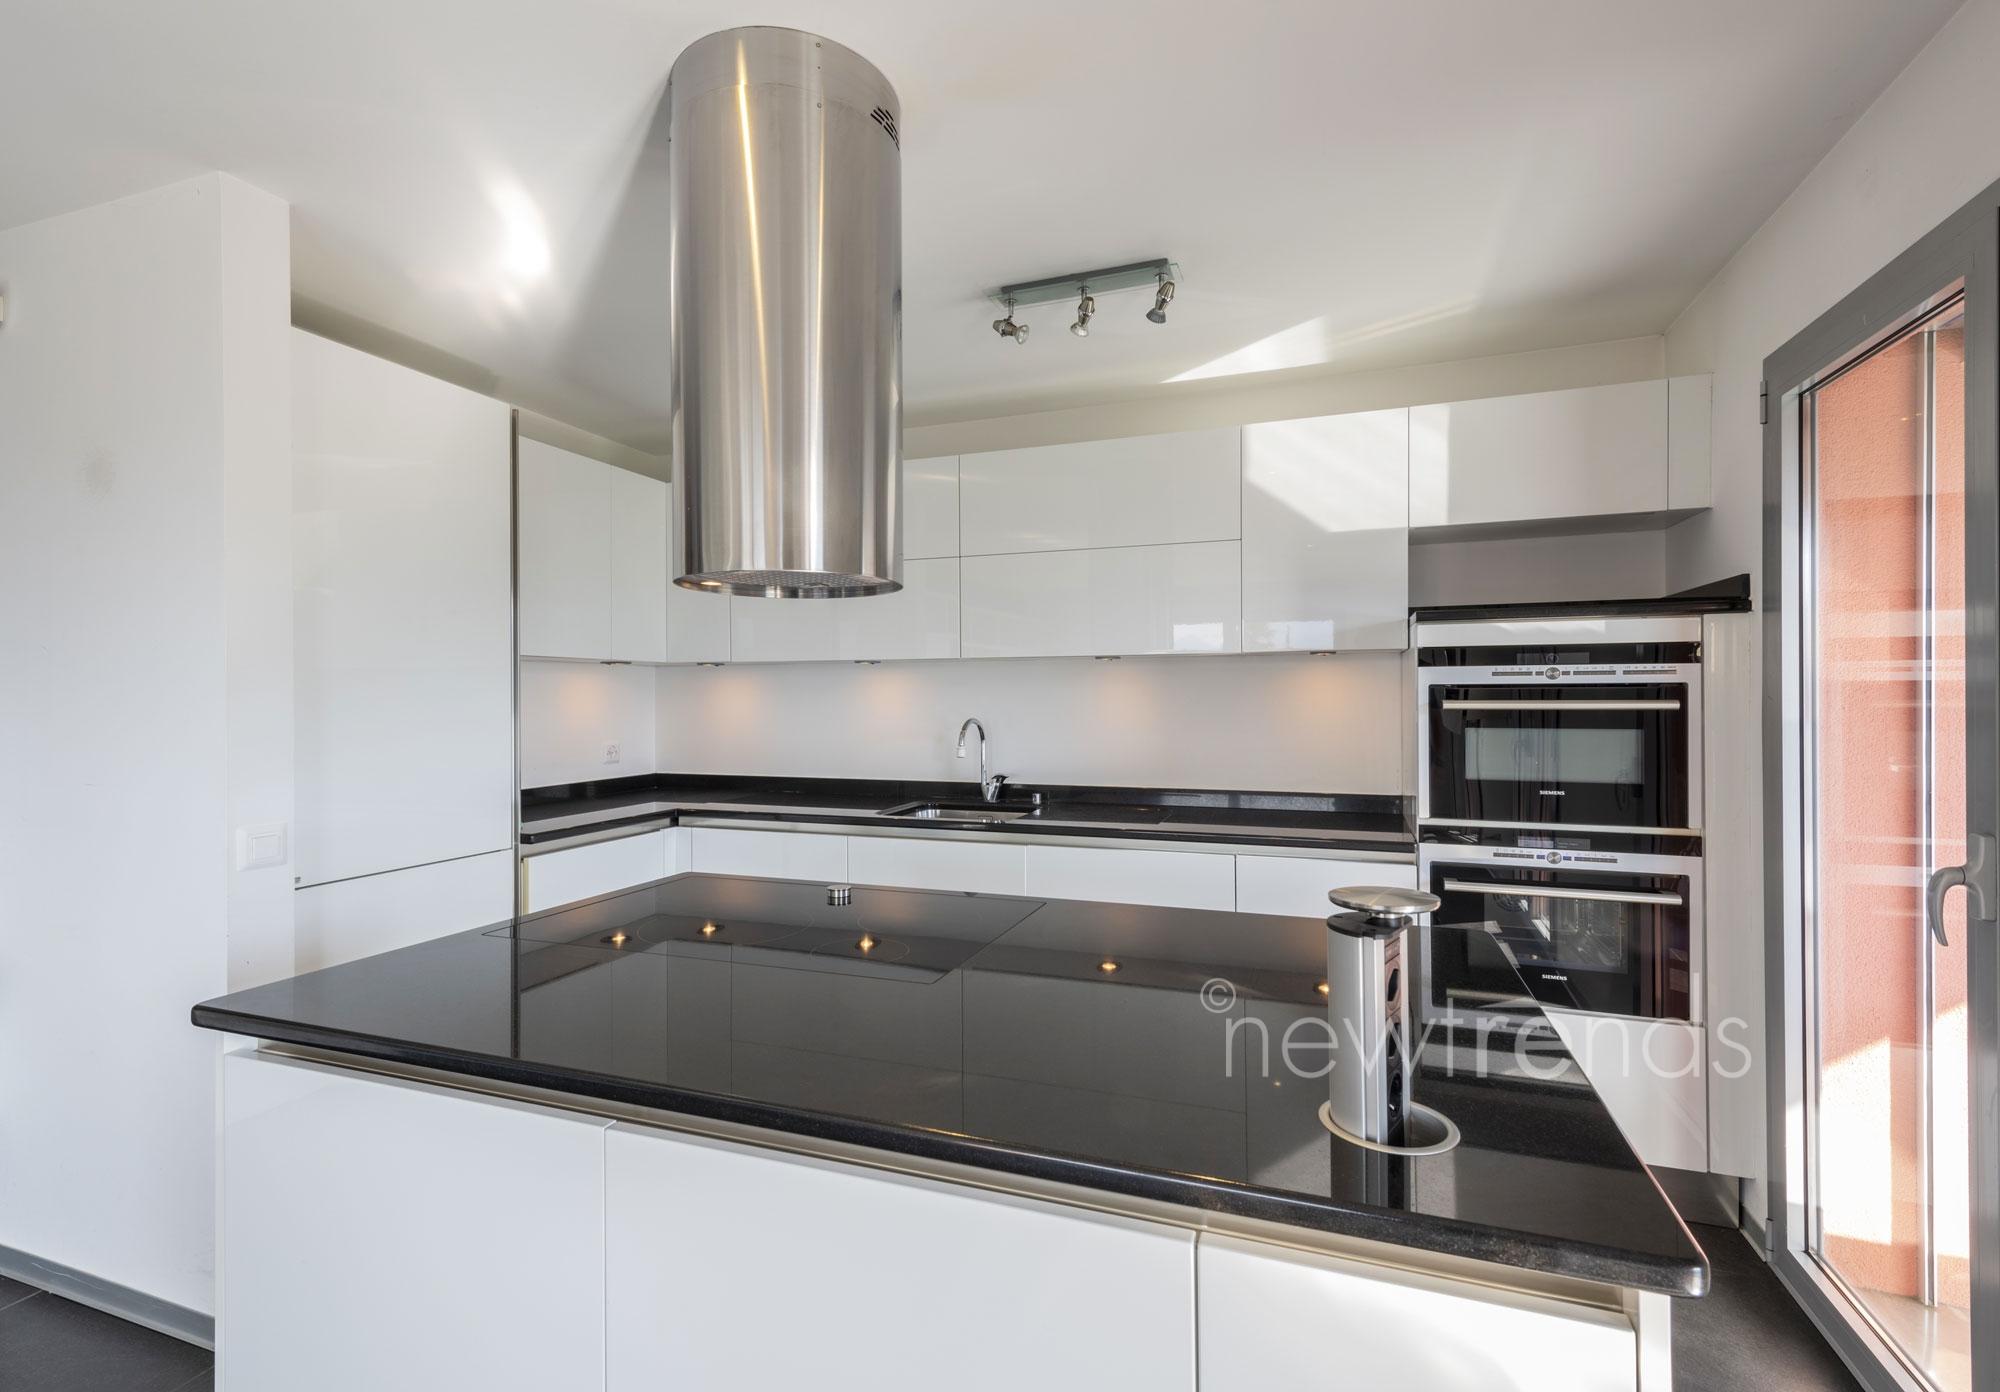 vendesi appartamento moderno ottimo prezzo con ampia terrazza coperta a gravesano: foto dettaglio cucina